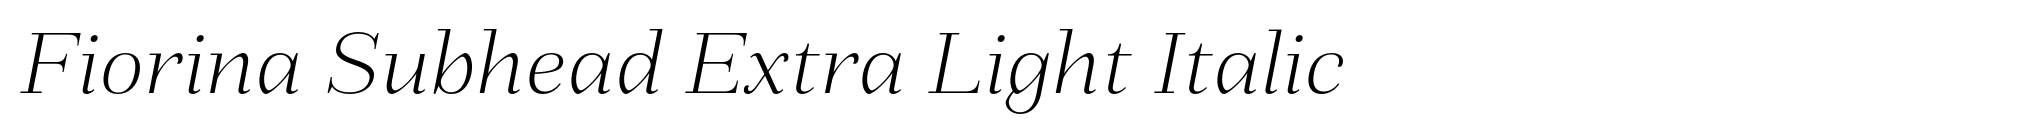 Fiorina Subhead Extra Light Italic image